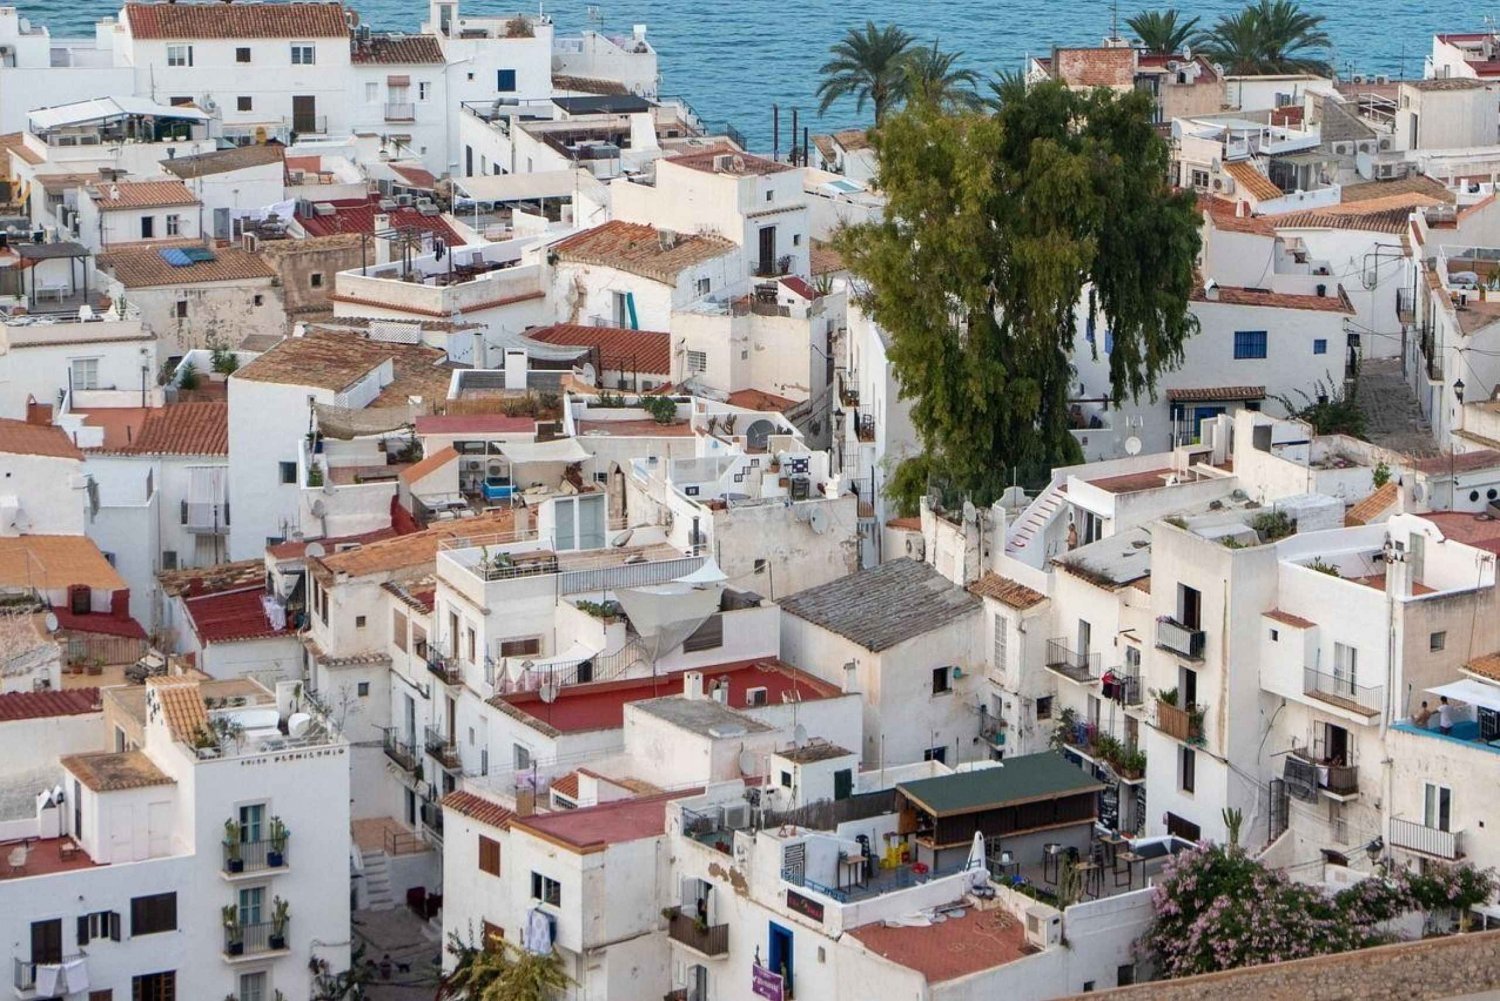 Privat guidet vandretur i Ibizas gamle bydel